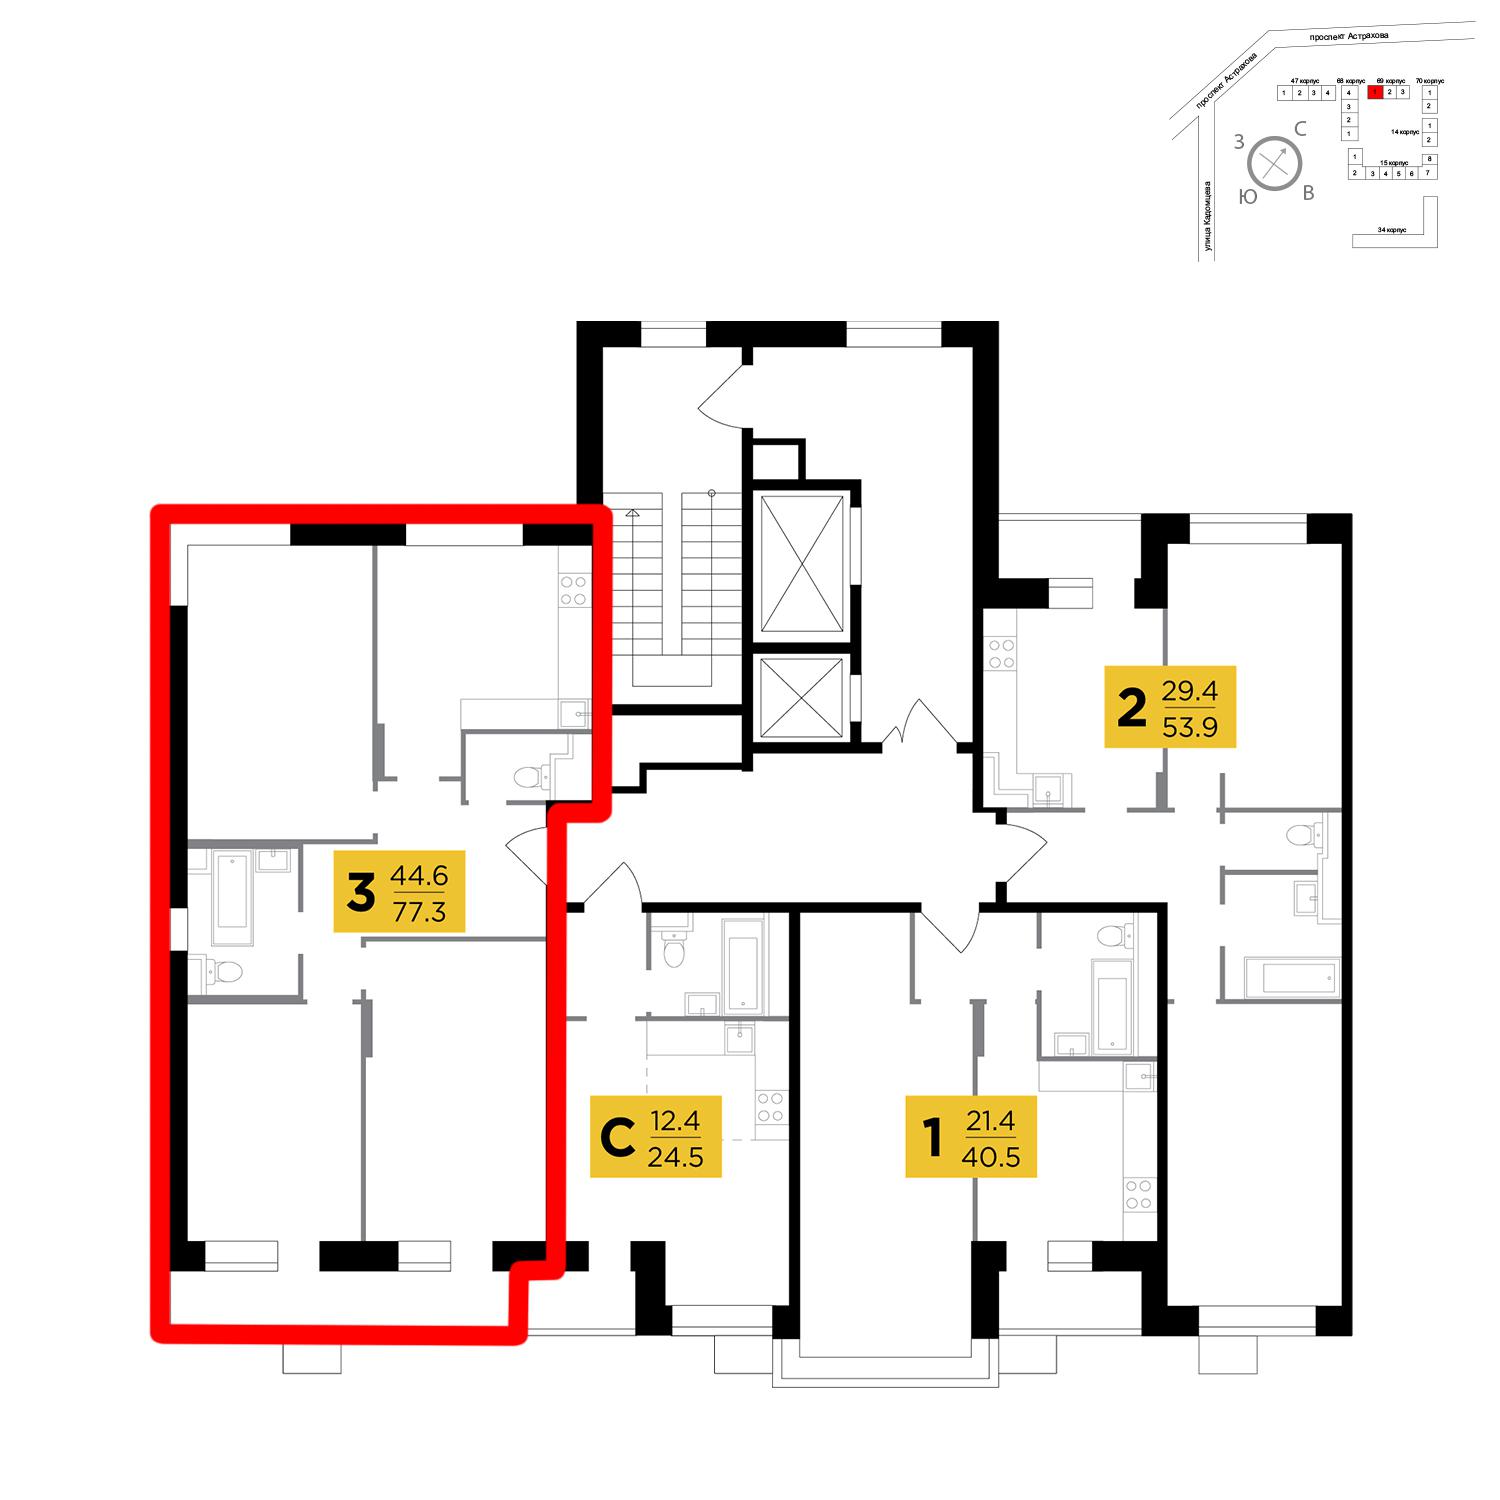 Продаётся 3-комнатная квартира в новостройке 77.3 кв.м. этаж 3/18 за 8 162 880 руб 